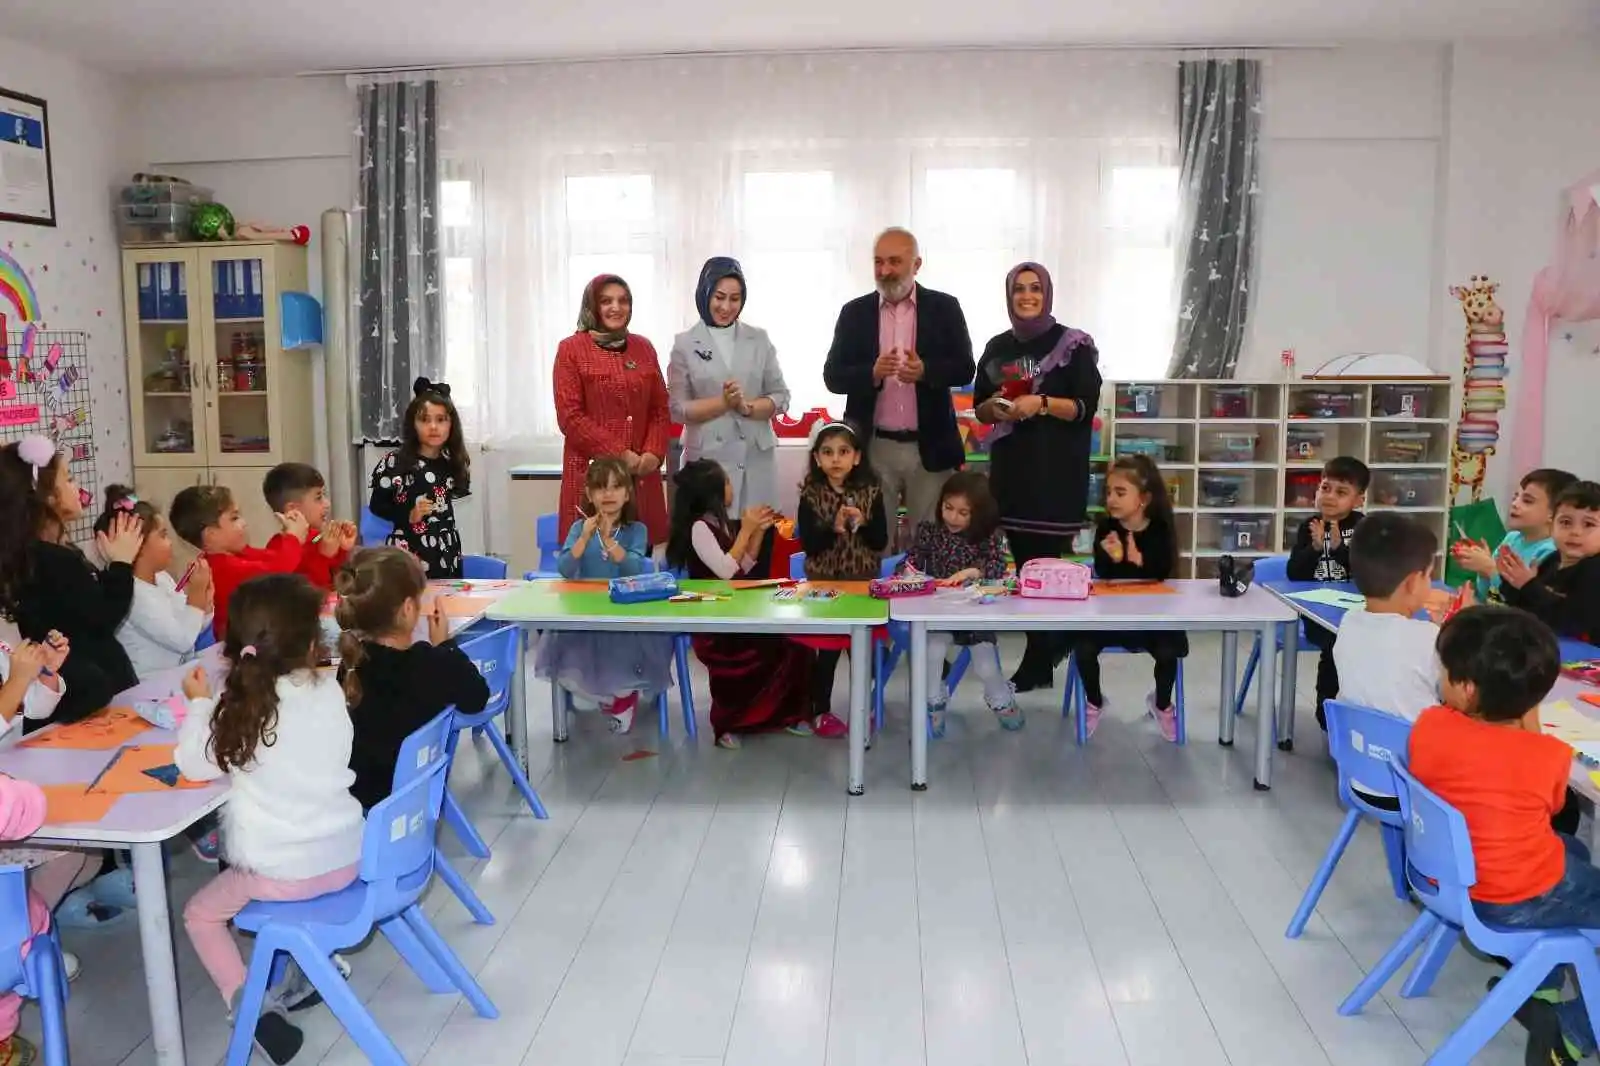 Başkan Silpagar, Öğretmenlerin Gününü hediyelerle kutladı
